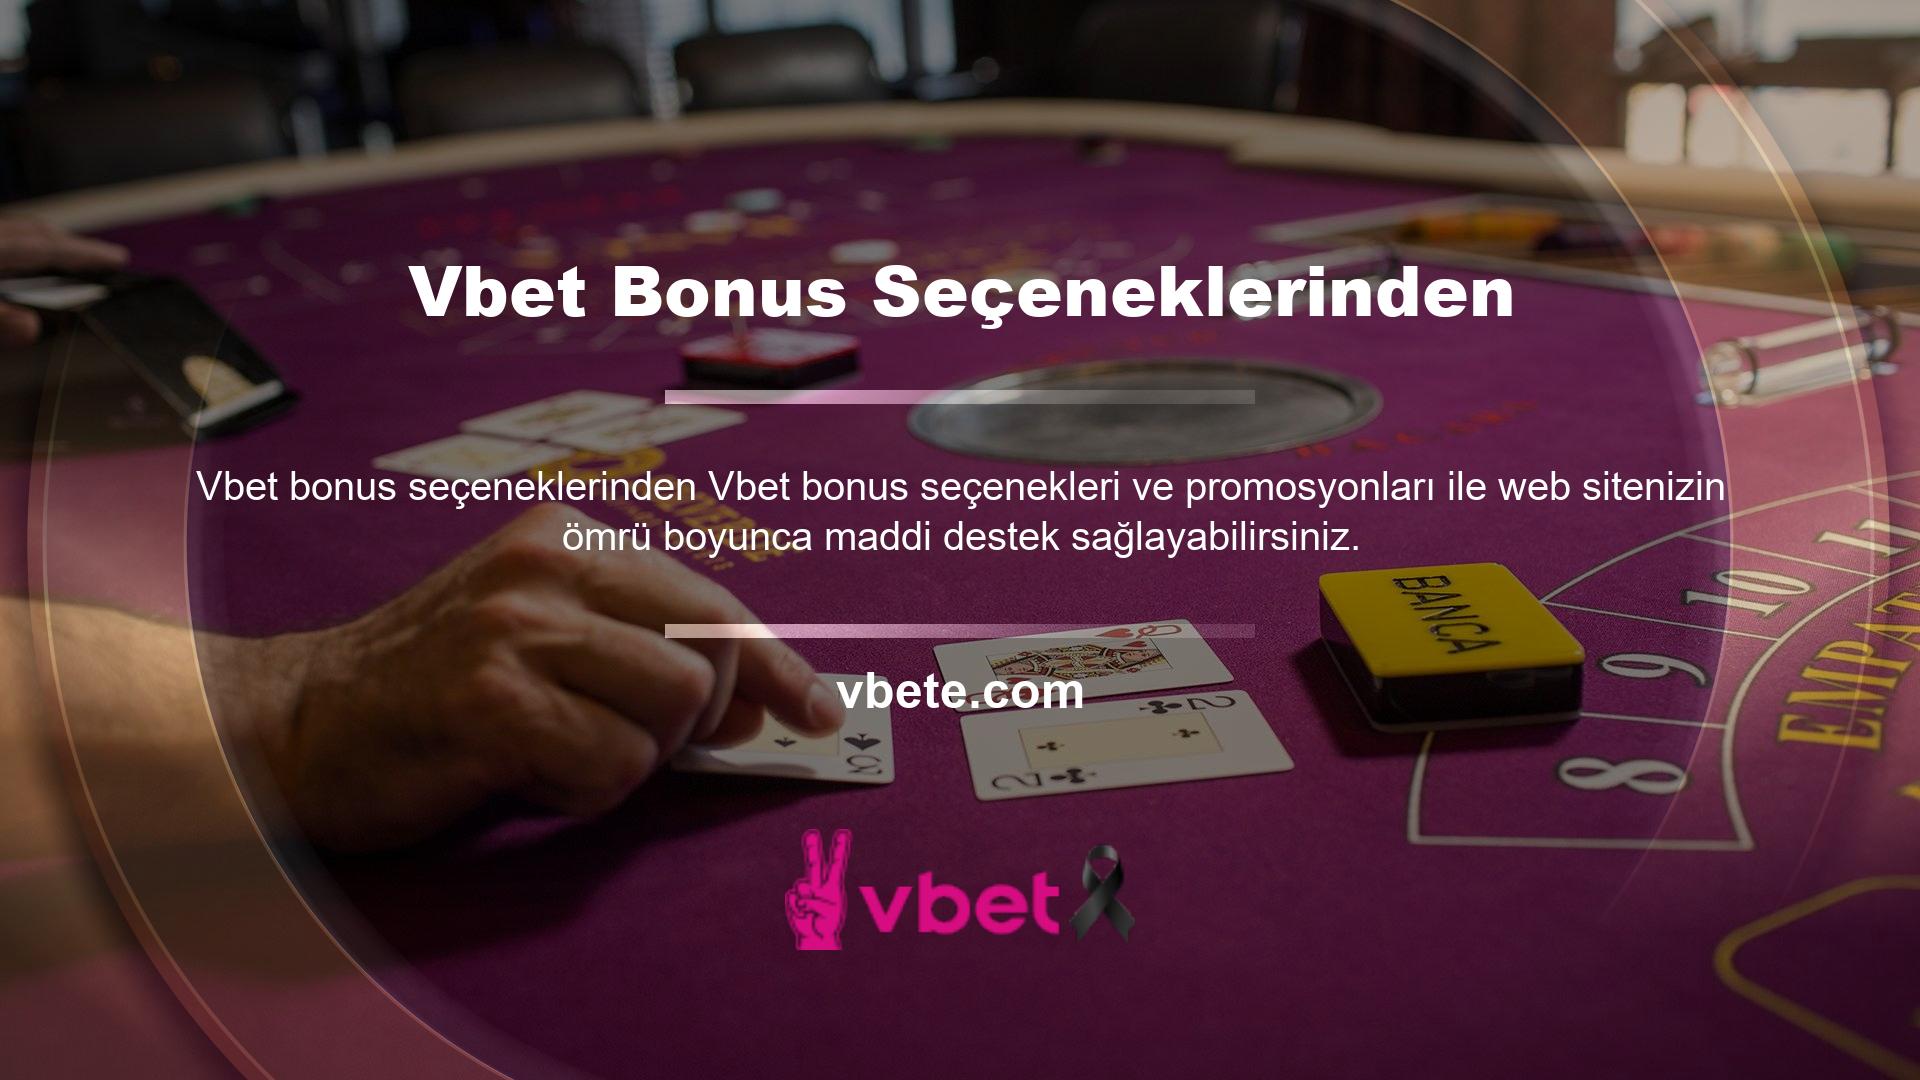 Vbet web sitesi aktif olarak çevrimiçi oyun ve casino sektörüne hizmet vermektedir